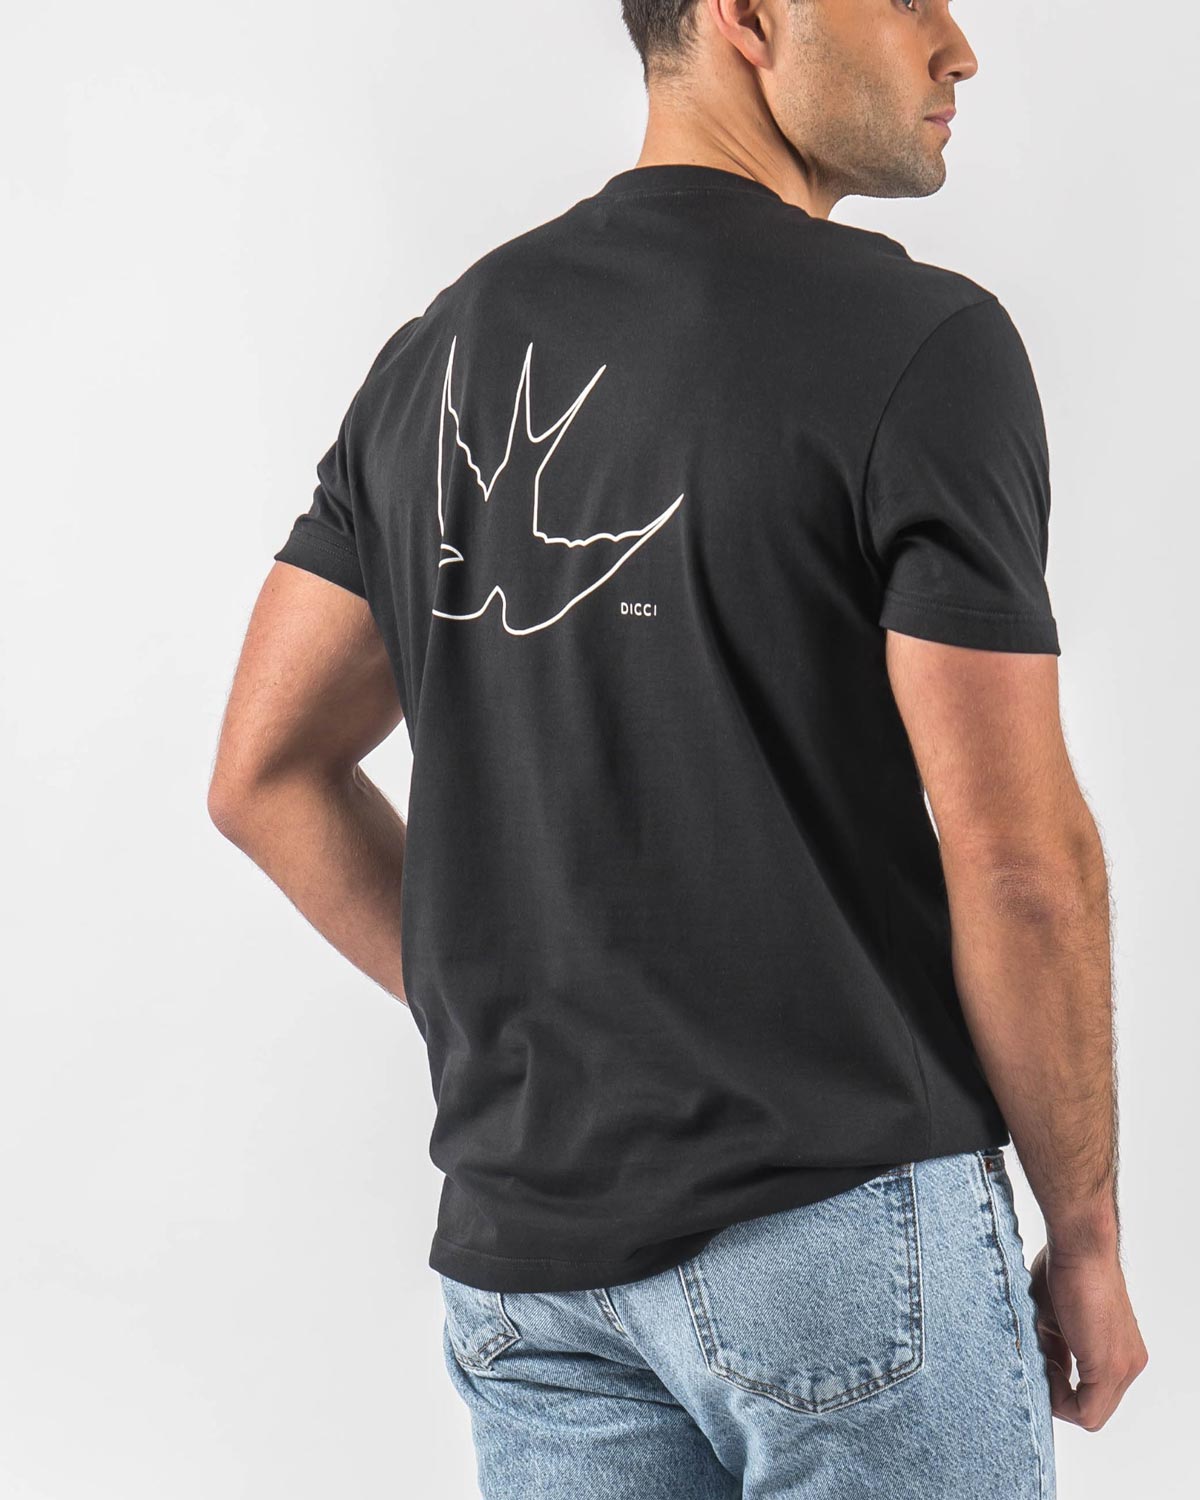 Camiseta estampada Flying Bird en el cuerpo del modelo - Camiseta negra - Ropa Online - Dicci